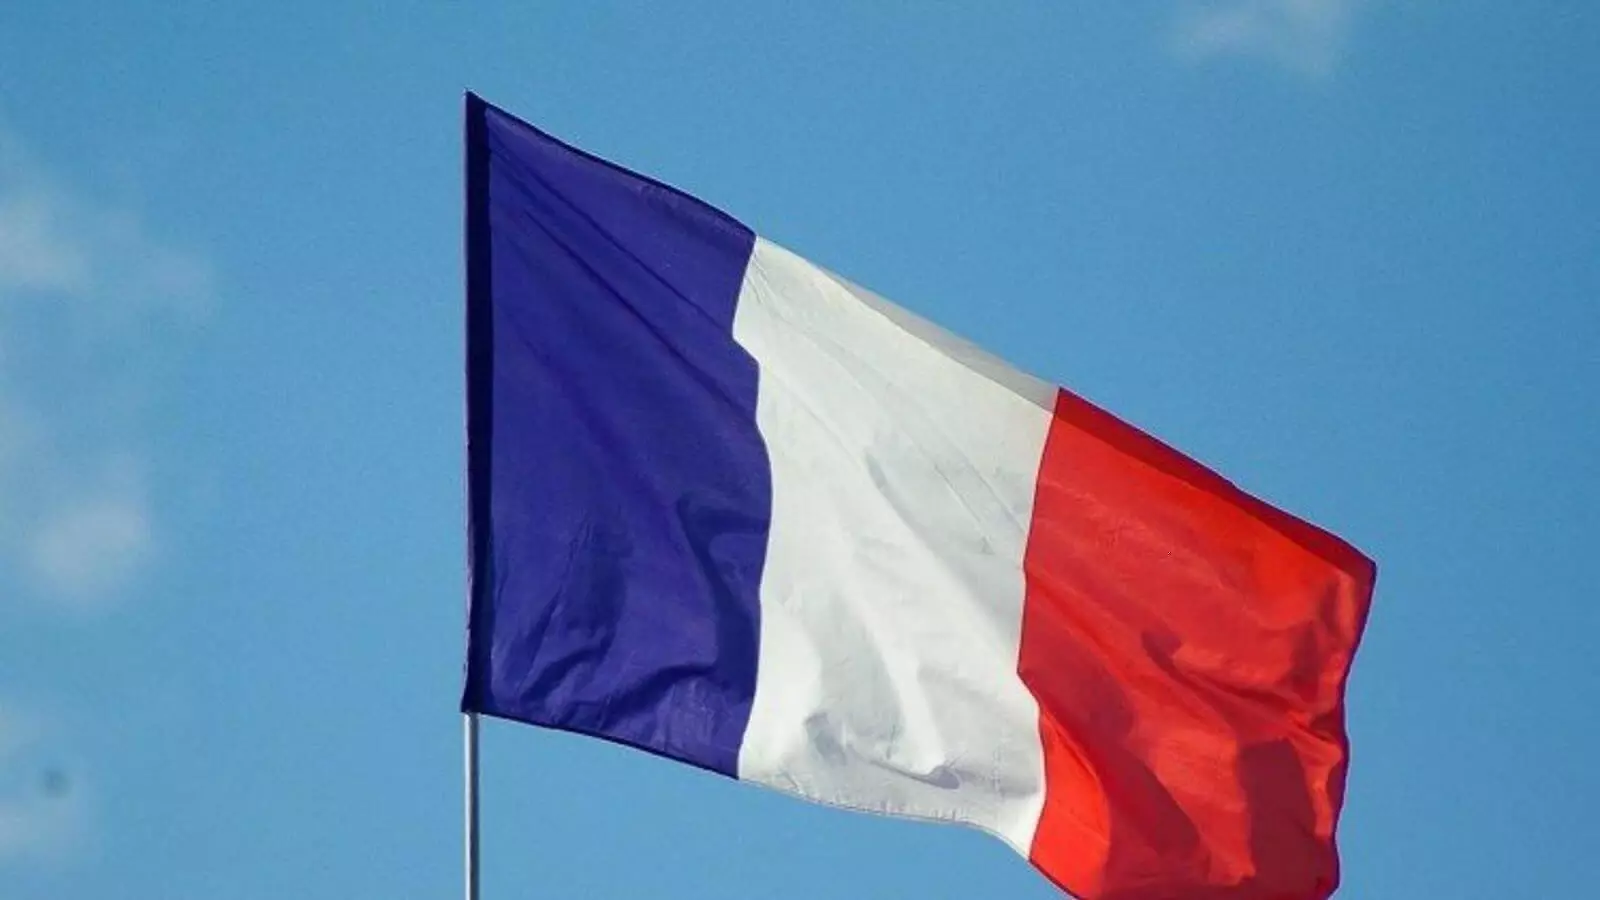 फ्रांस के राष्ट्रीय झंडे में हुए बदलाव से सभी लोग हैरान, राष्ट्रपति मैक्रों की हो रही आलोचना